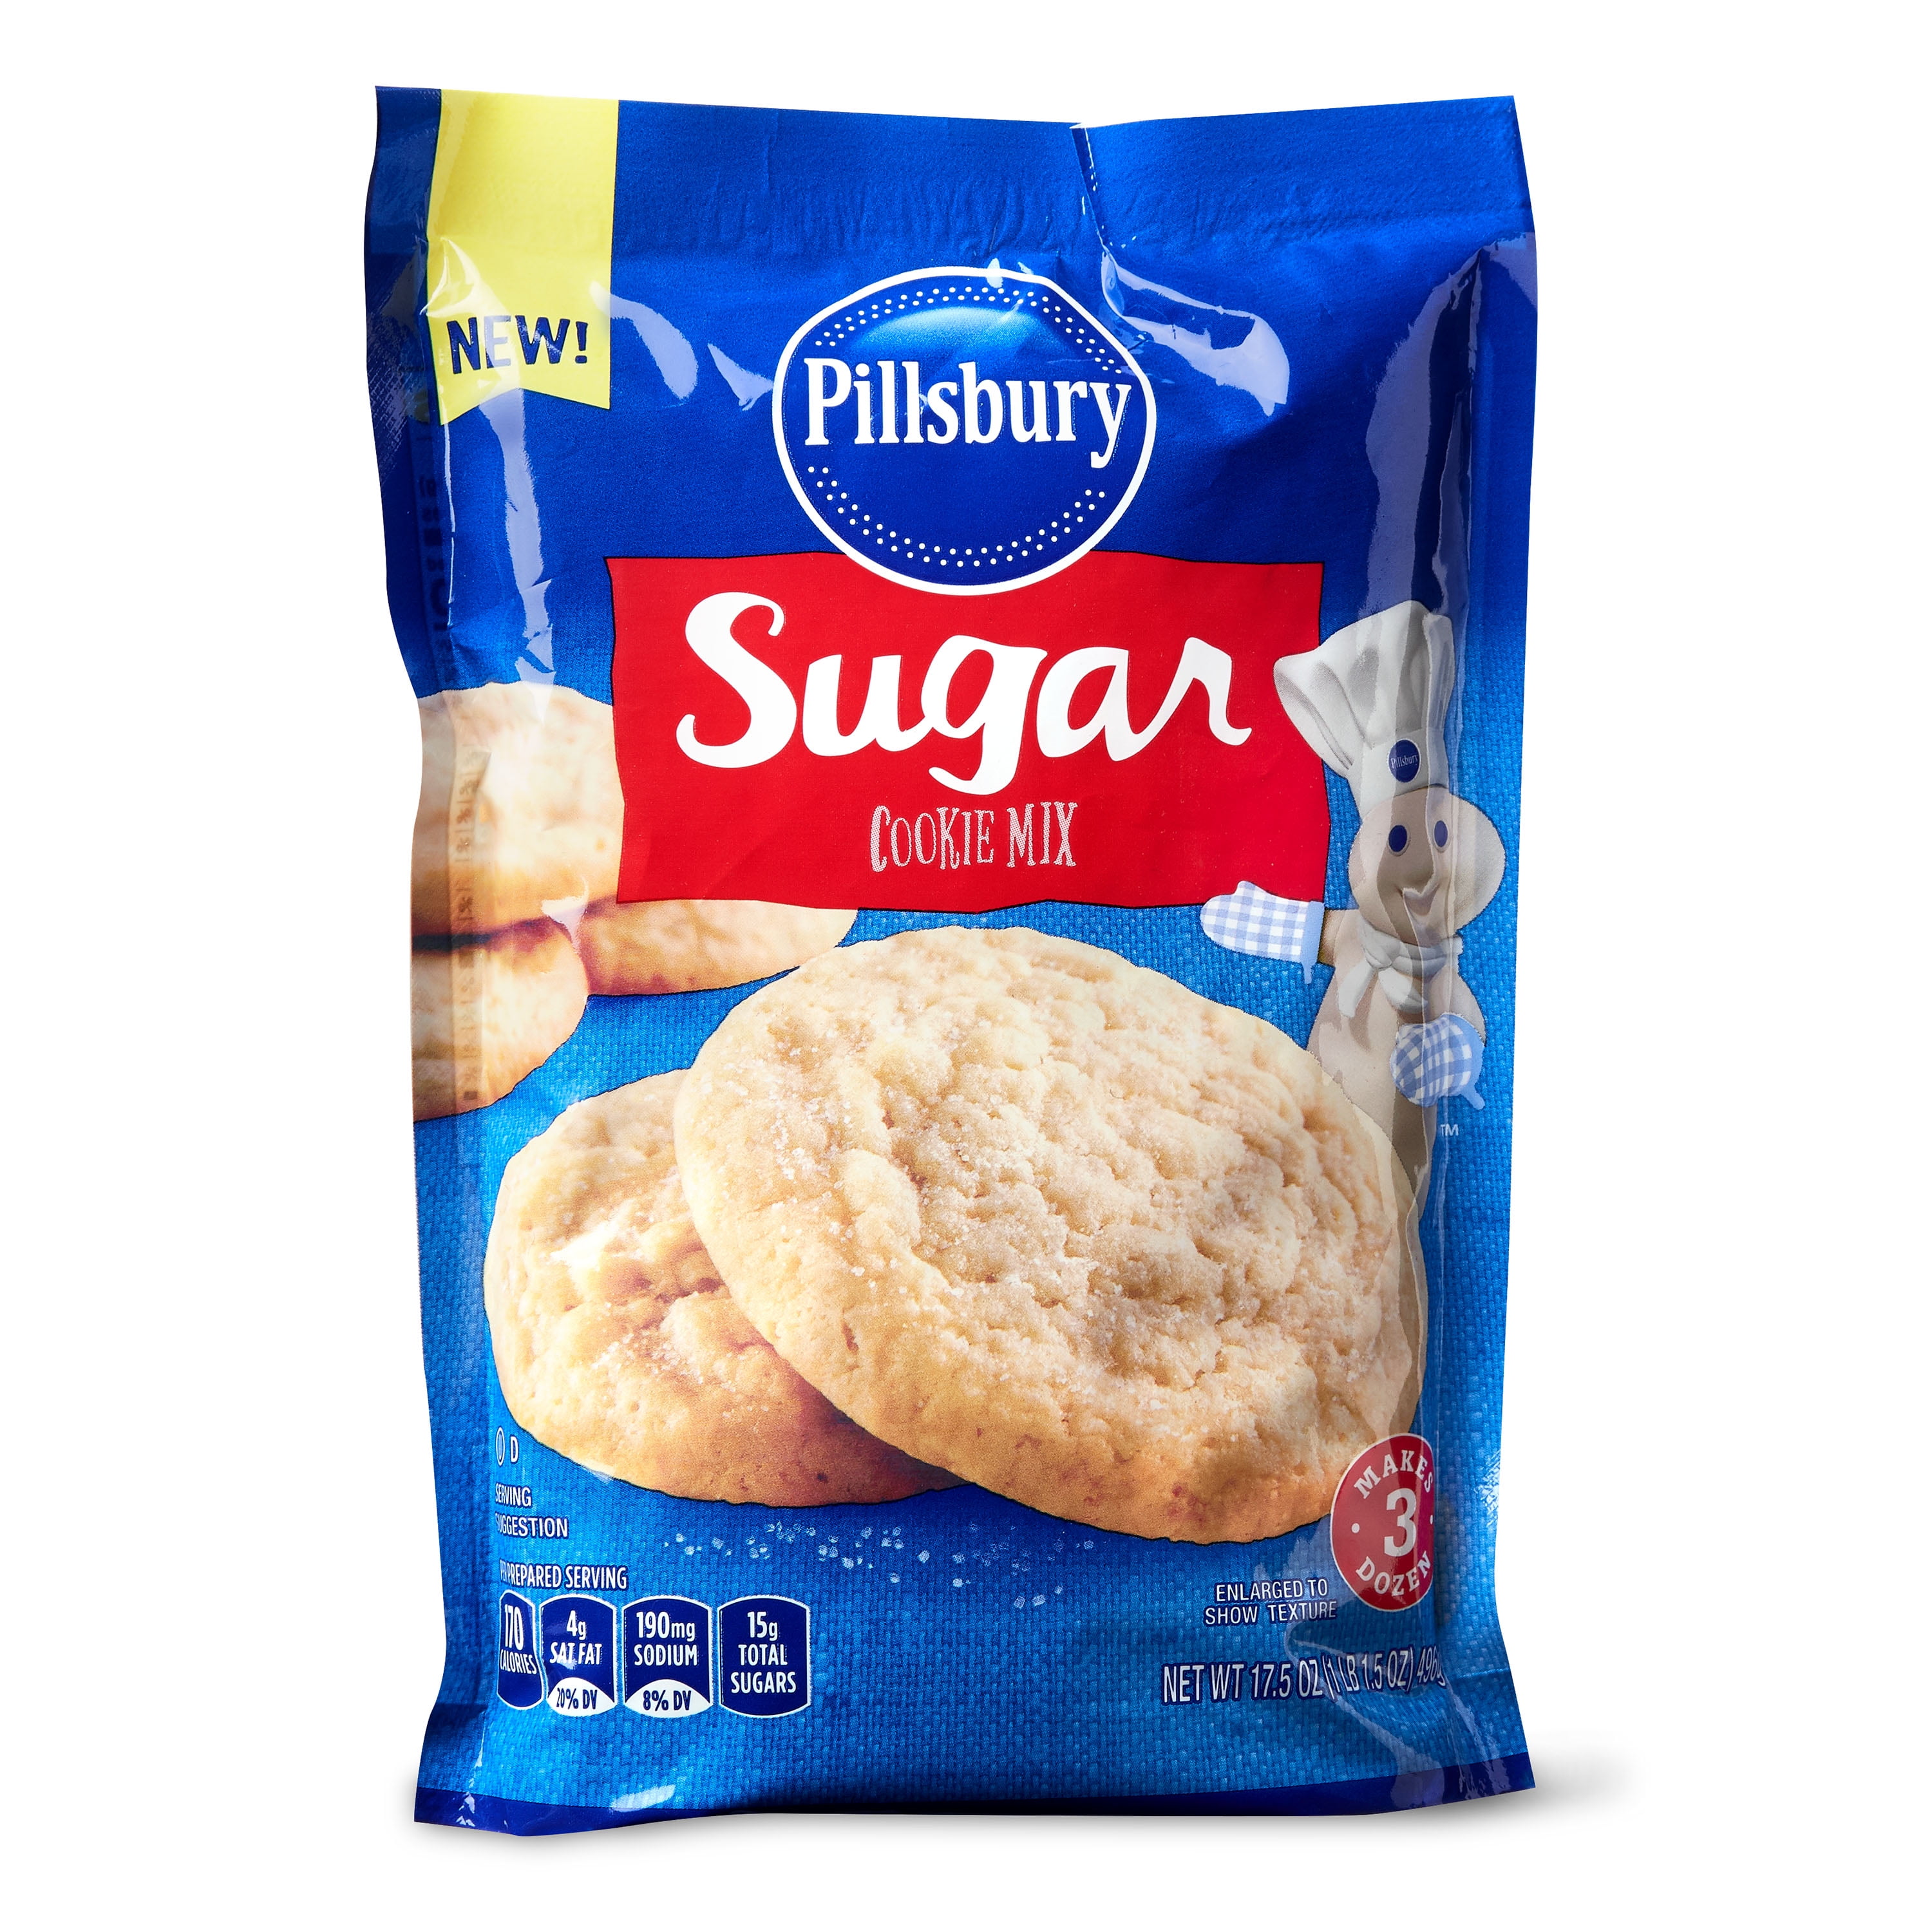 Pillsbury Sugar Cookies : Homemade Pillsbury Sugar Cookies Review | Munchies Blog / Pillsbury's ...